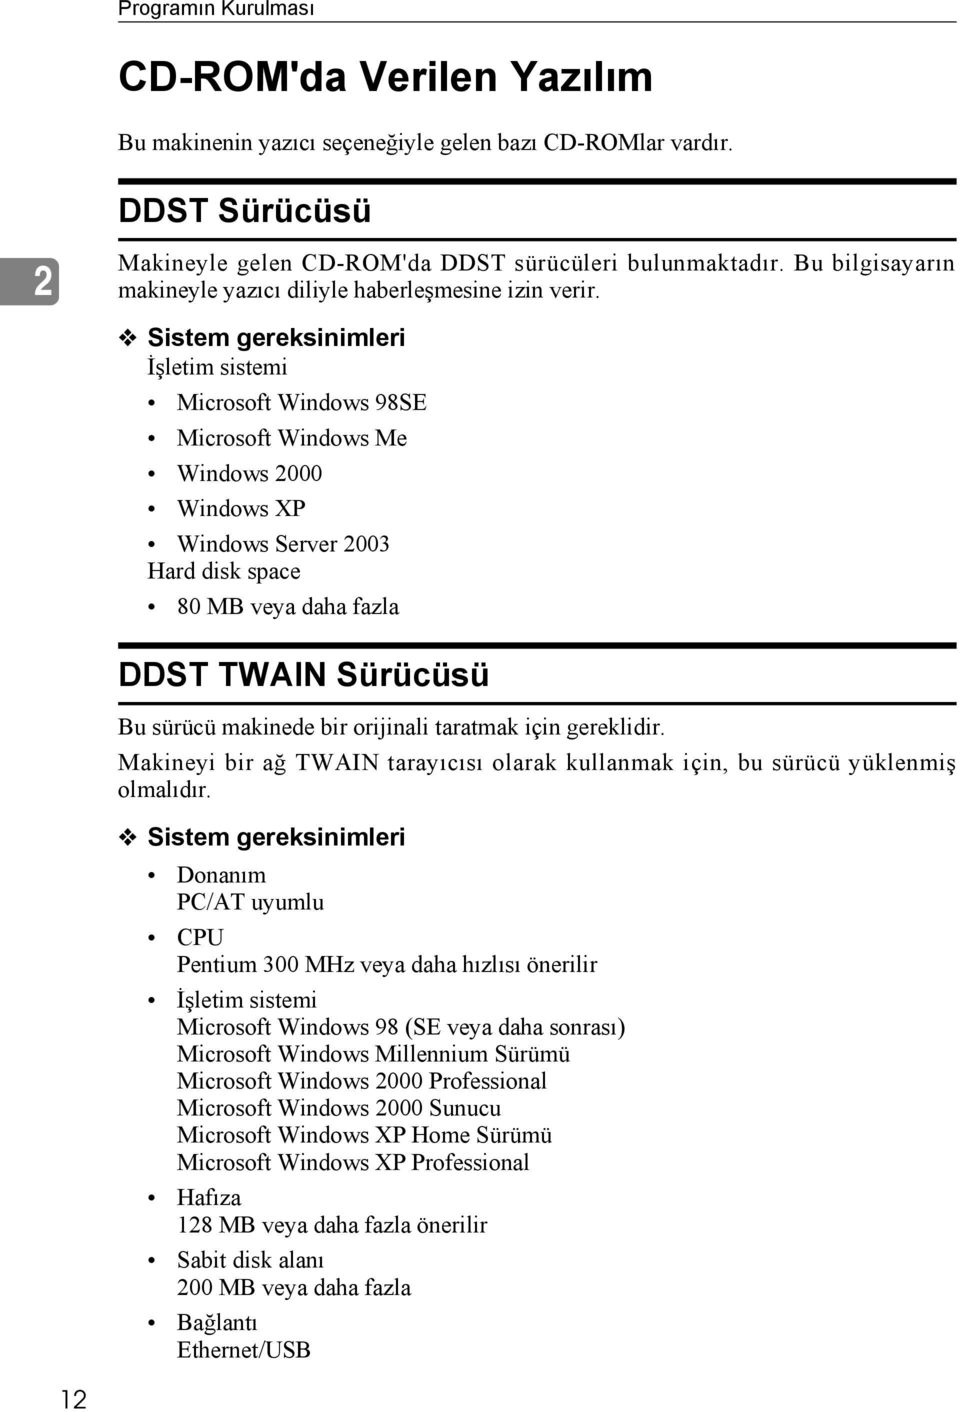 Sistem gereksinimleri İşletim sistemi Microsoft Windows 98SE Microsoft Windows Me Windows 2000 Windows XP Windows Server 2003 Hard disk space 80 MB veya daha fazla DDST TWAIN Sürücüsü Bu sürücü